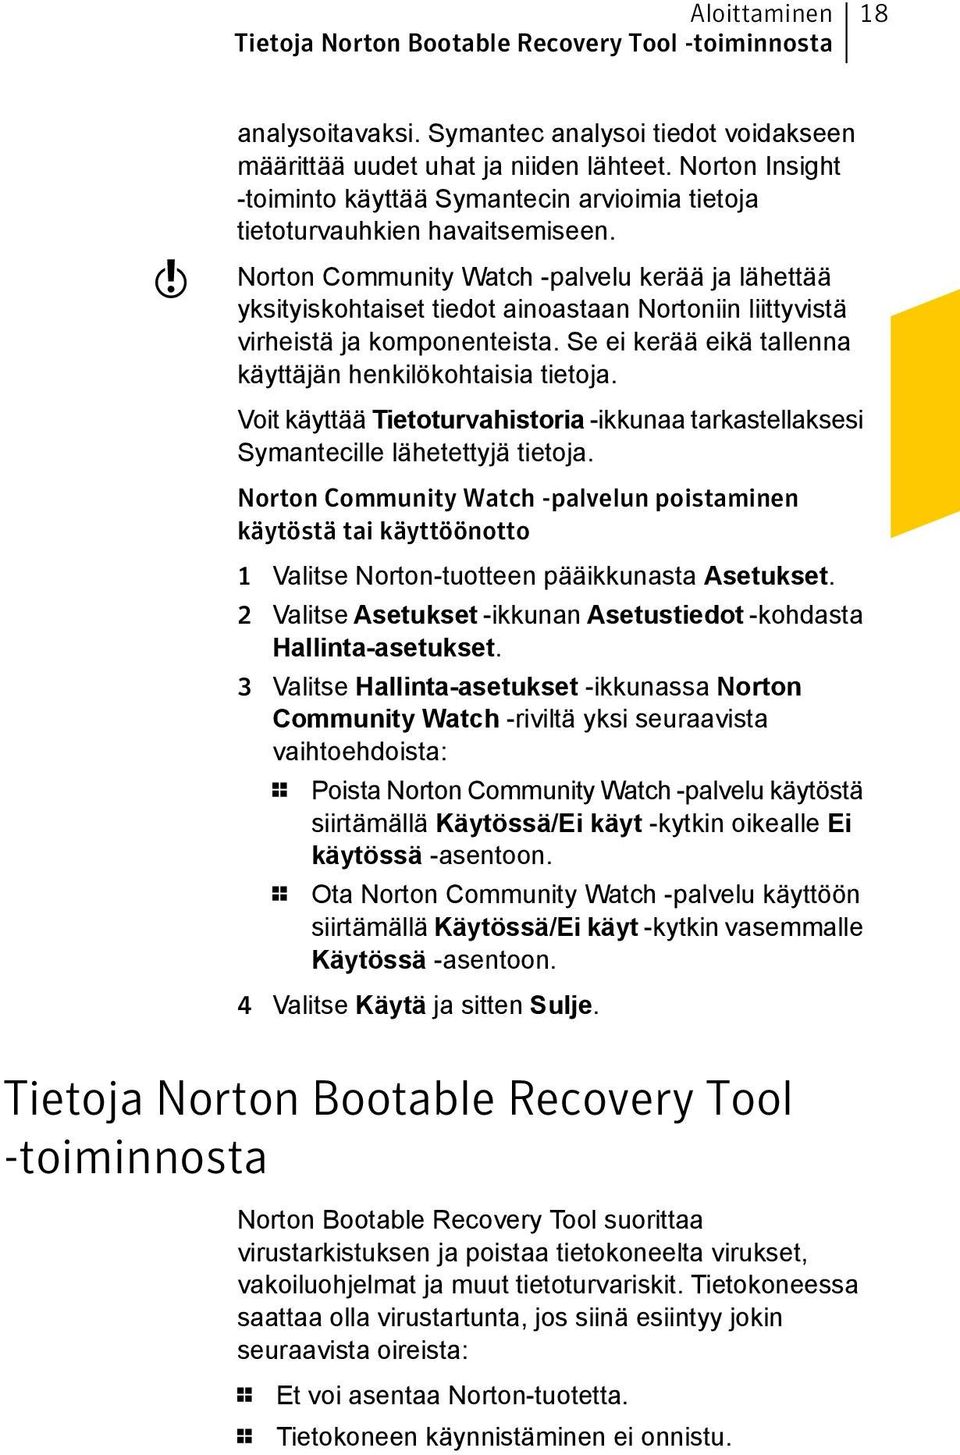 Norton Community Watch -palvelu kerää ja lähettää yksityiskohtaiset tiedot ainoastaan Nortoniin liittyvistä virheistä ja komponenteista. Se ei kerää eikä tallenna käyttäjän henkilökohtaisia tietoja.